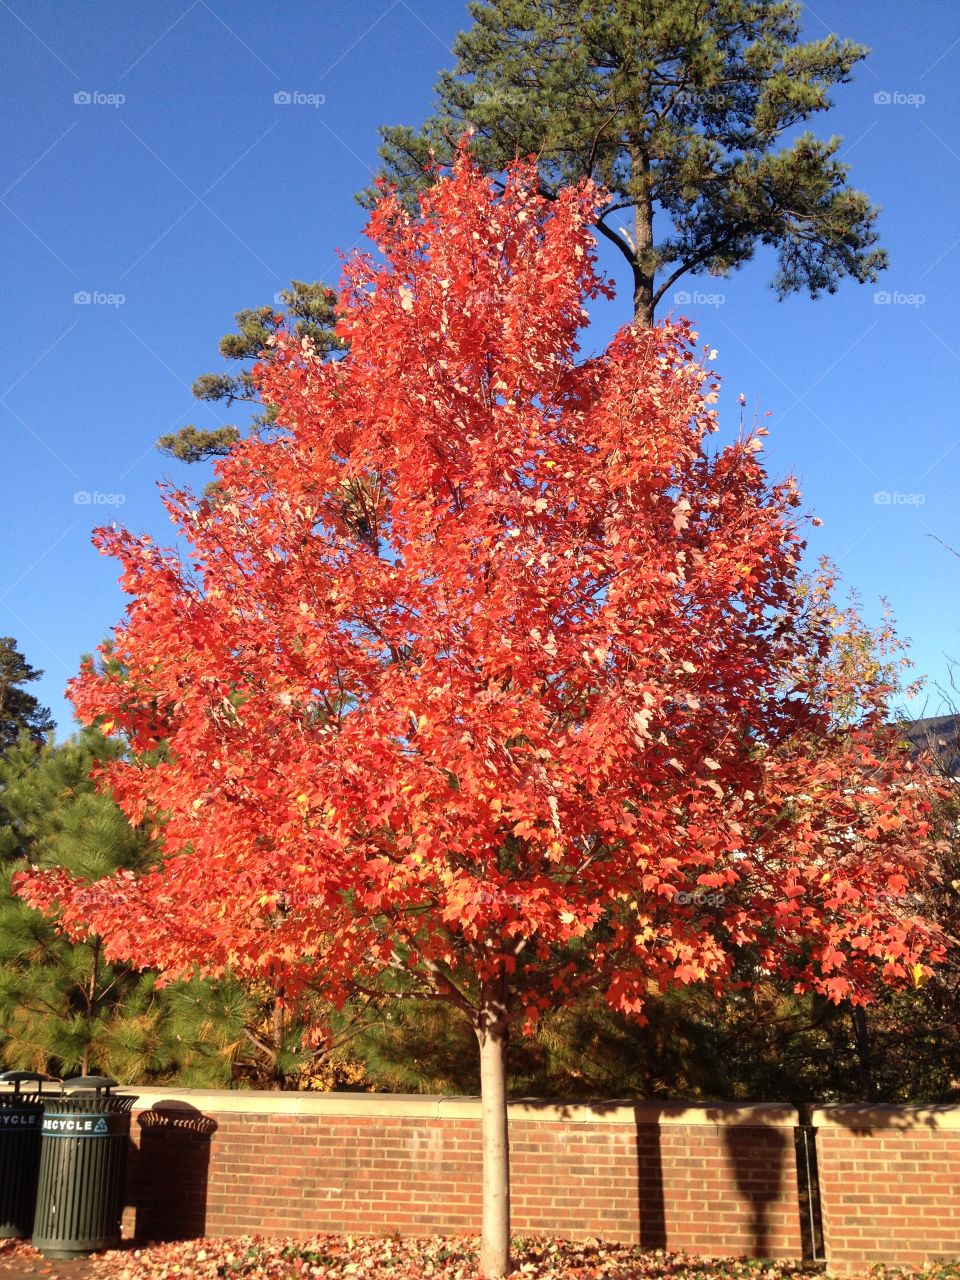 Fall red leaves on tree. Fall read leaves on tree